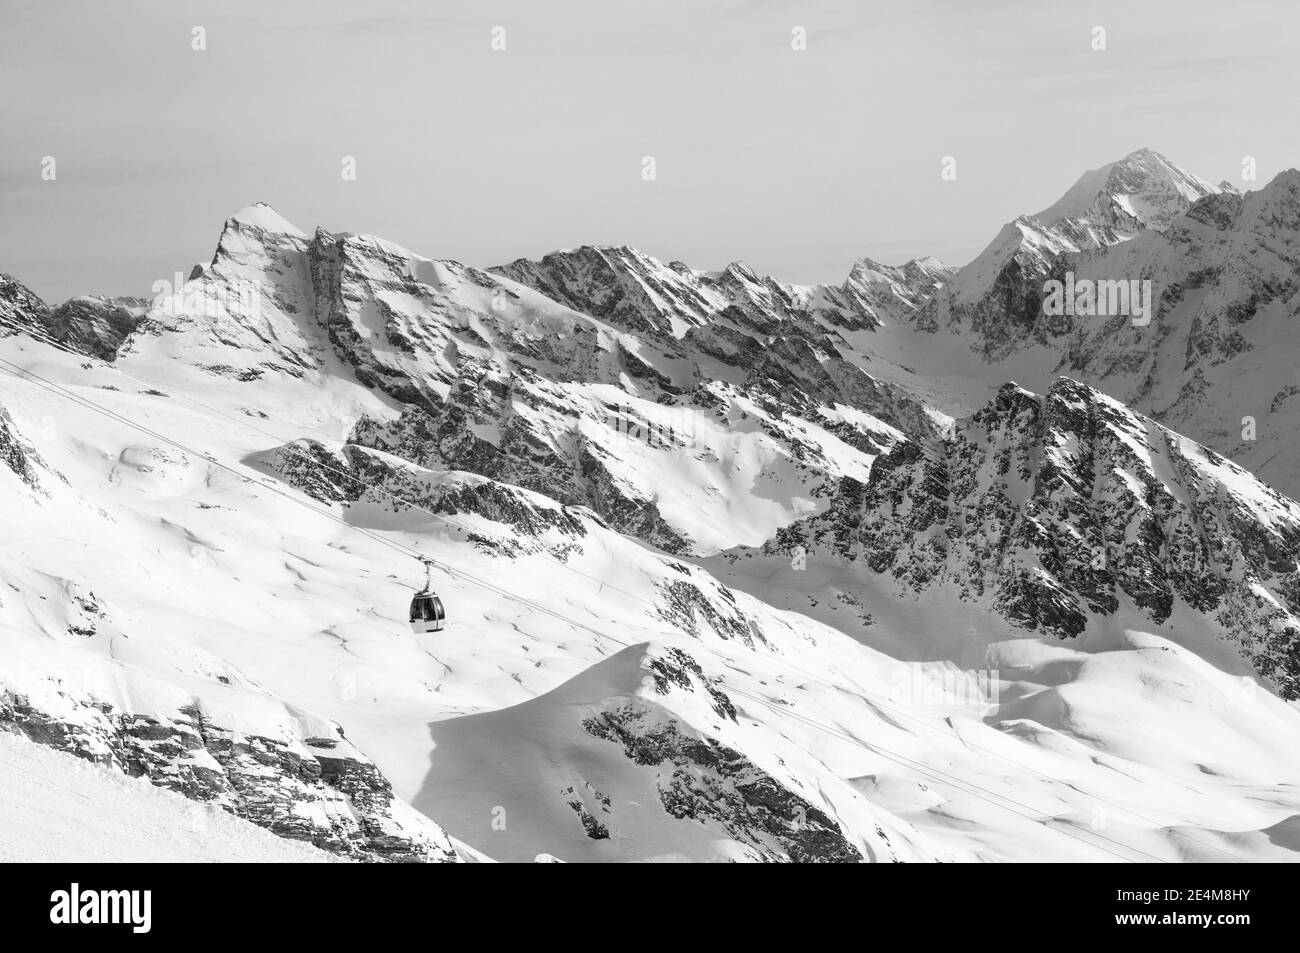 Gondola nelle alpi svizzere circondata da cime innevate. Foto di alta qualità Foto Stock